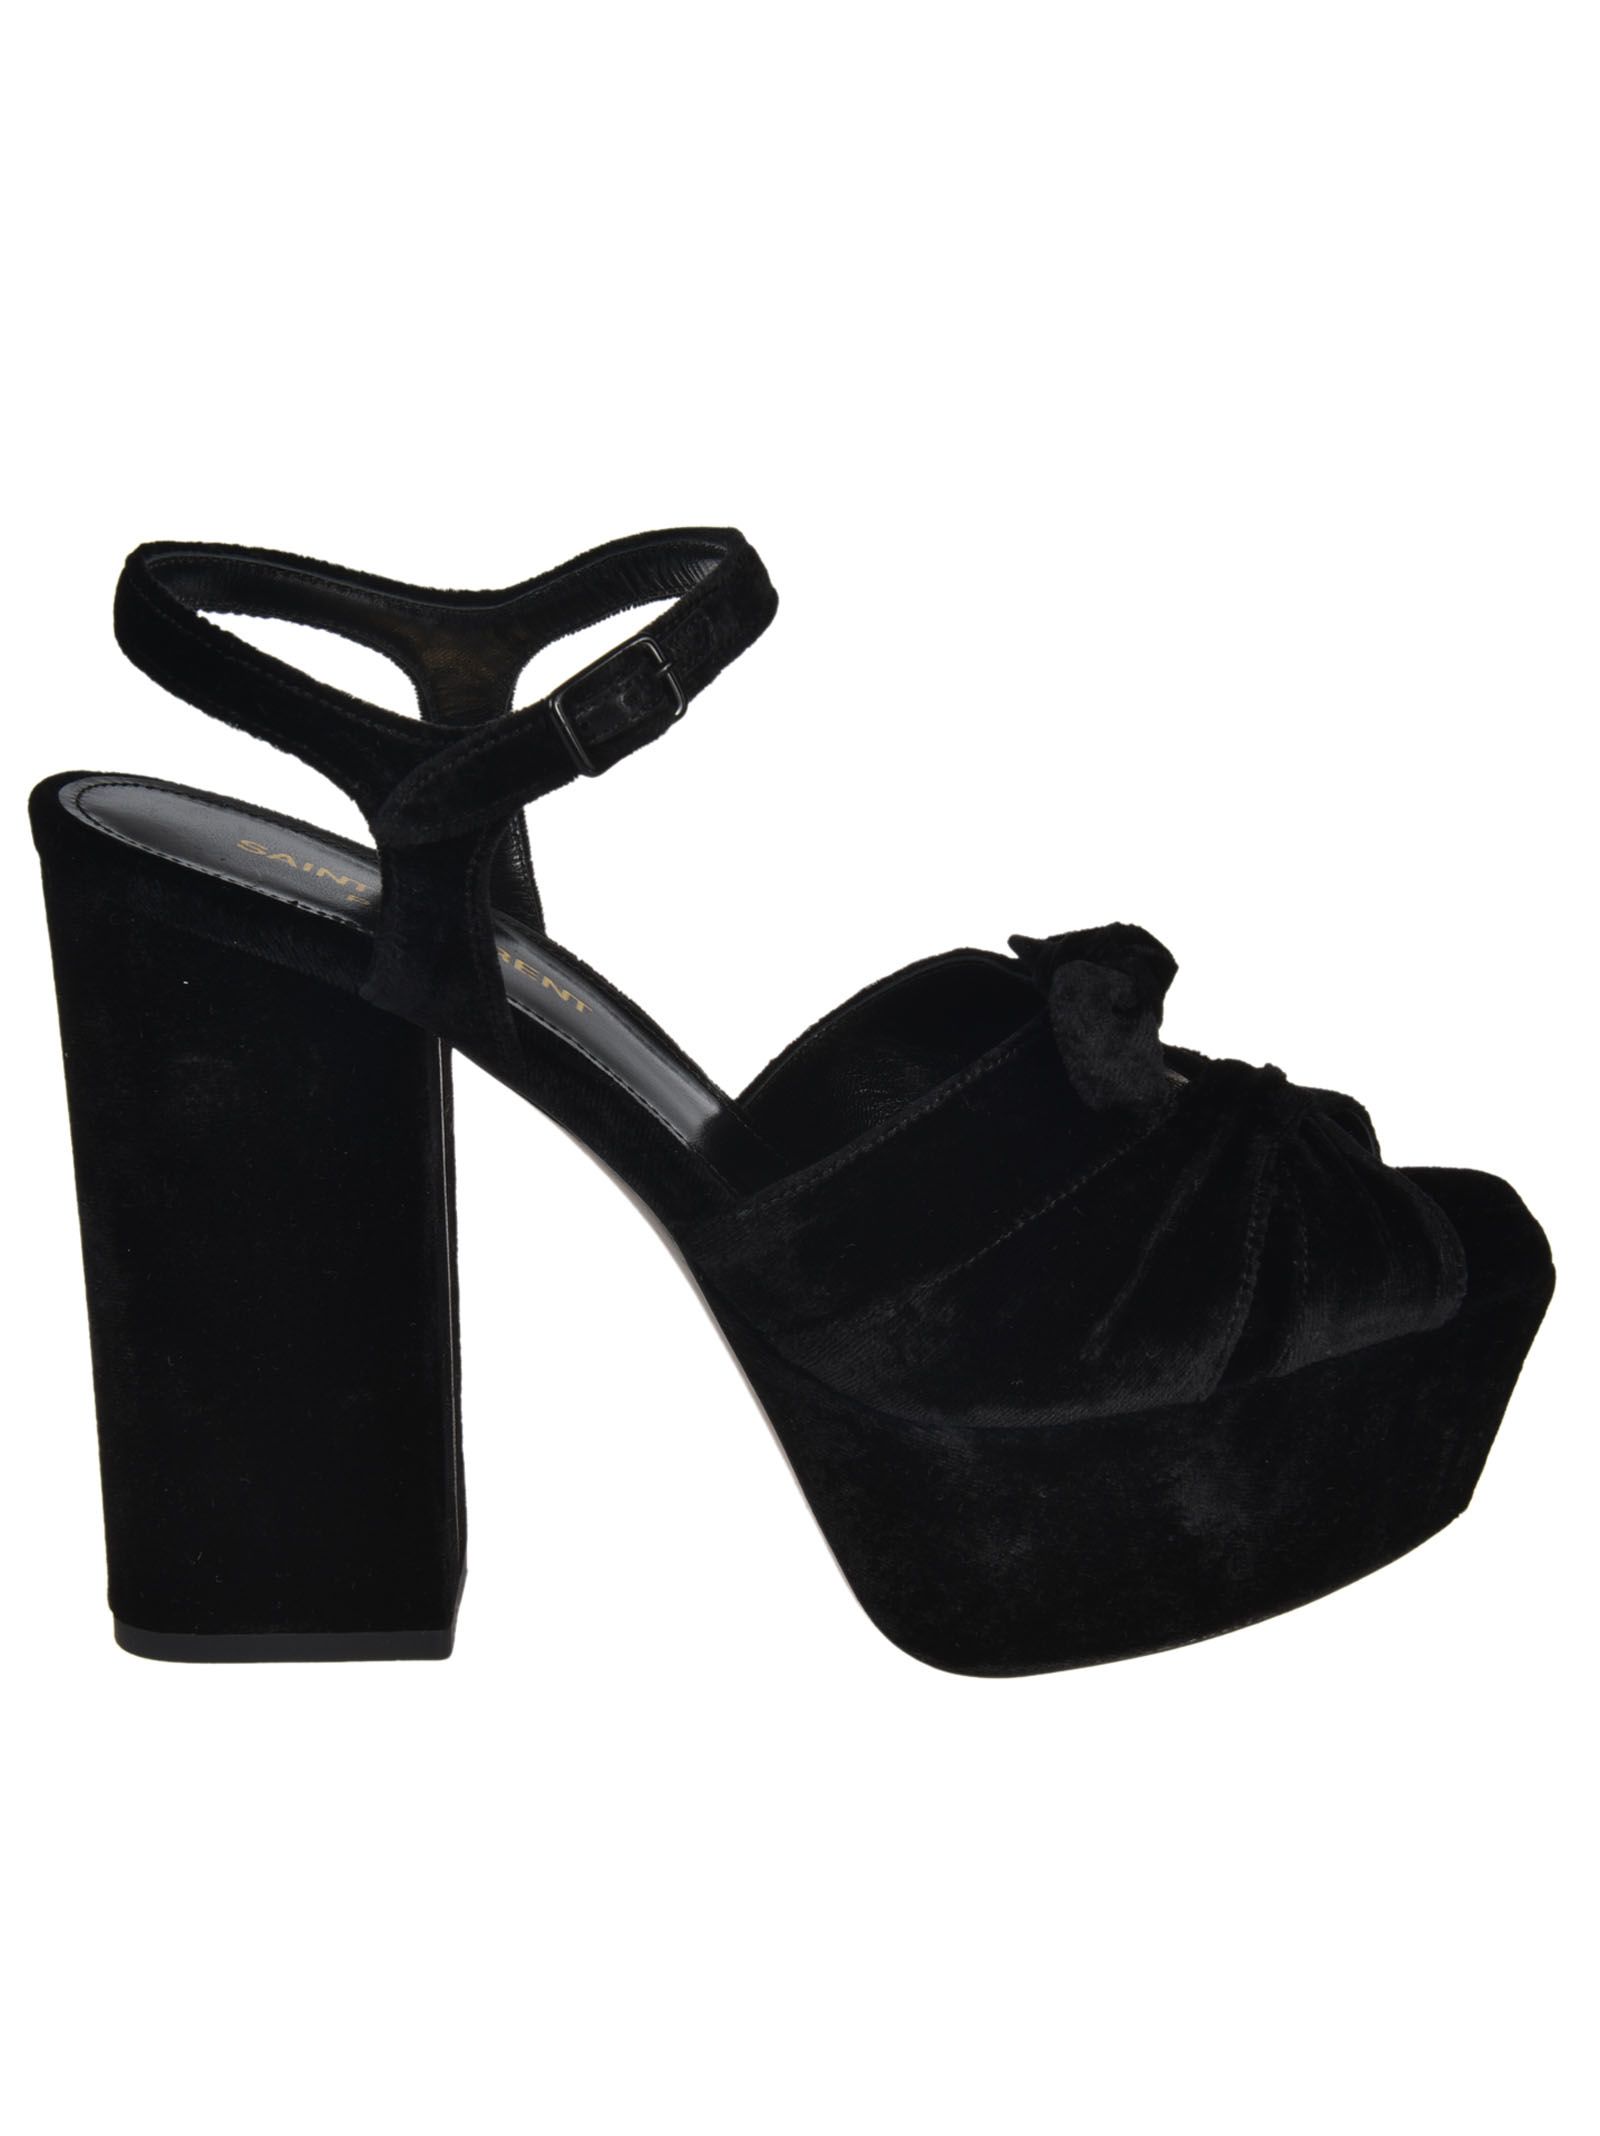 SAINT LAURENT Farrah Velvet Platform Sandals in Black | ModeSens